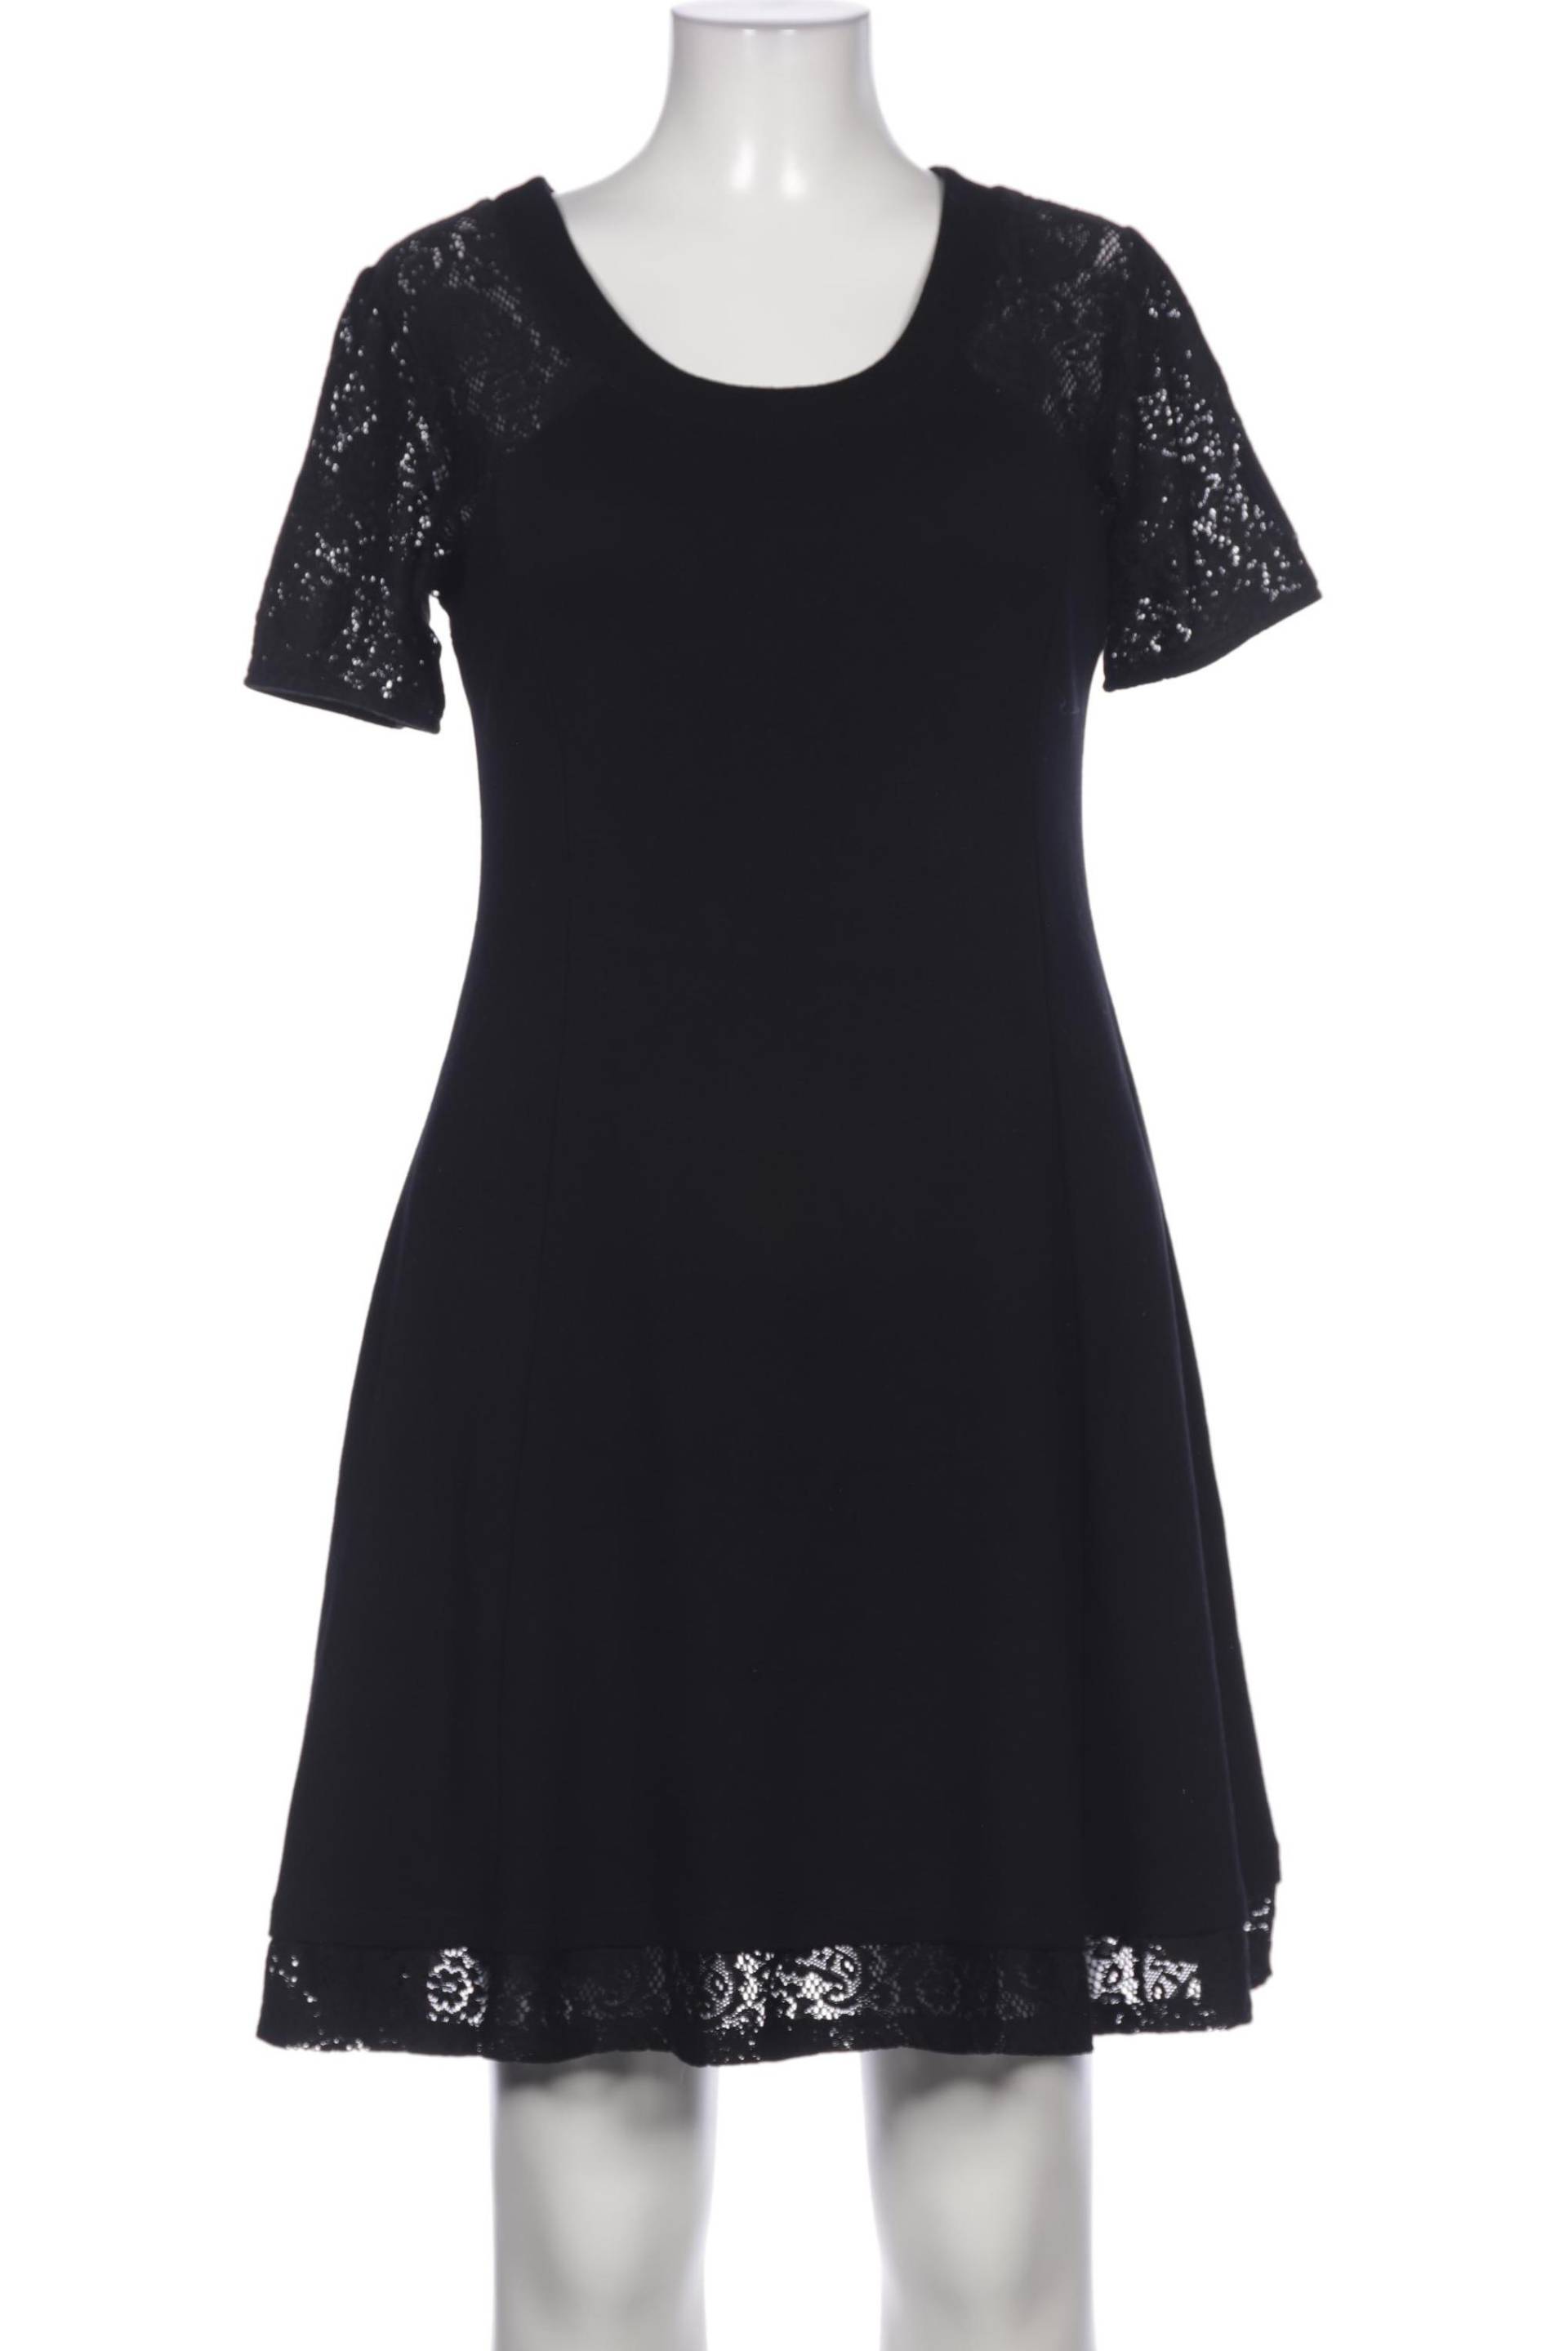 Anna Field Damen Kleid, schwarz, Gr. 44 von Anna Field